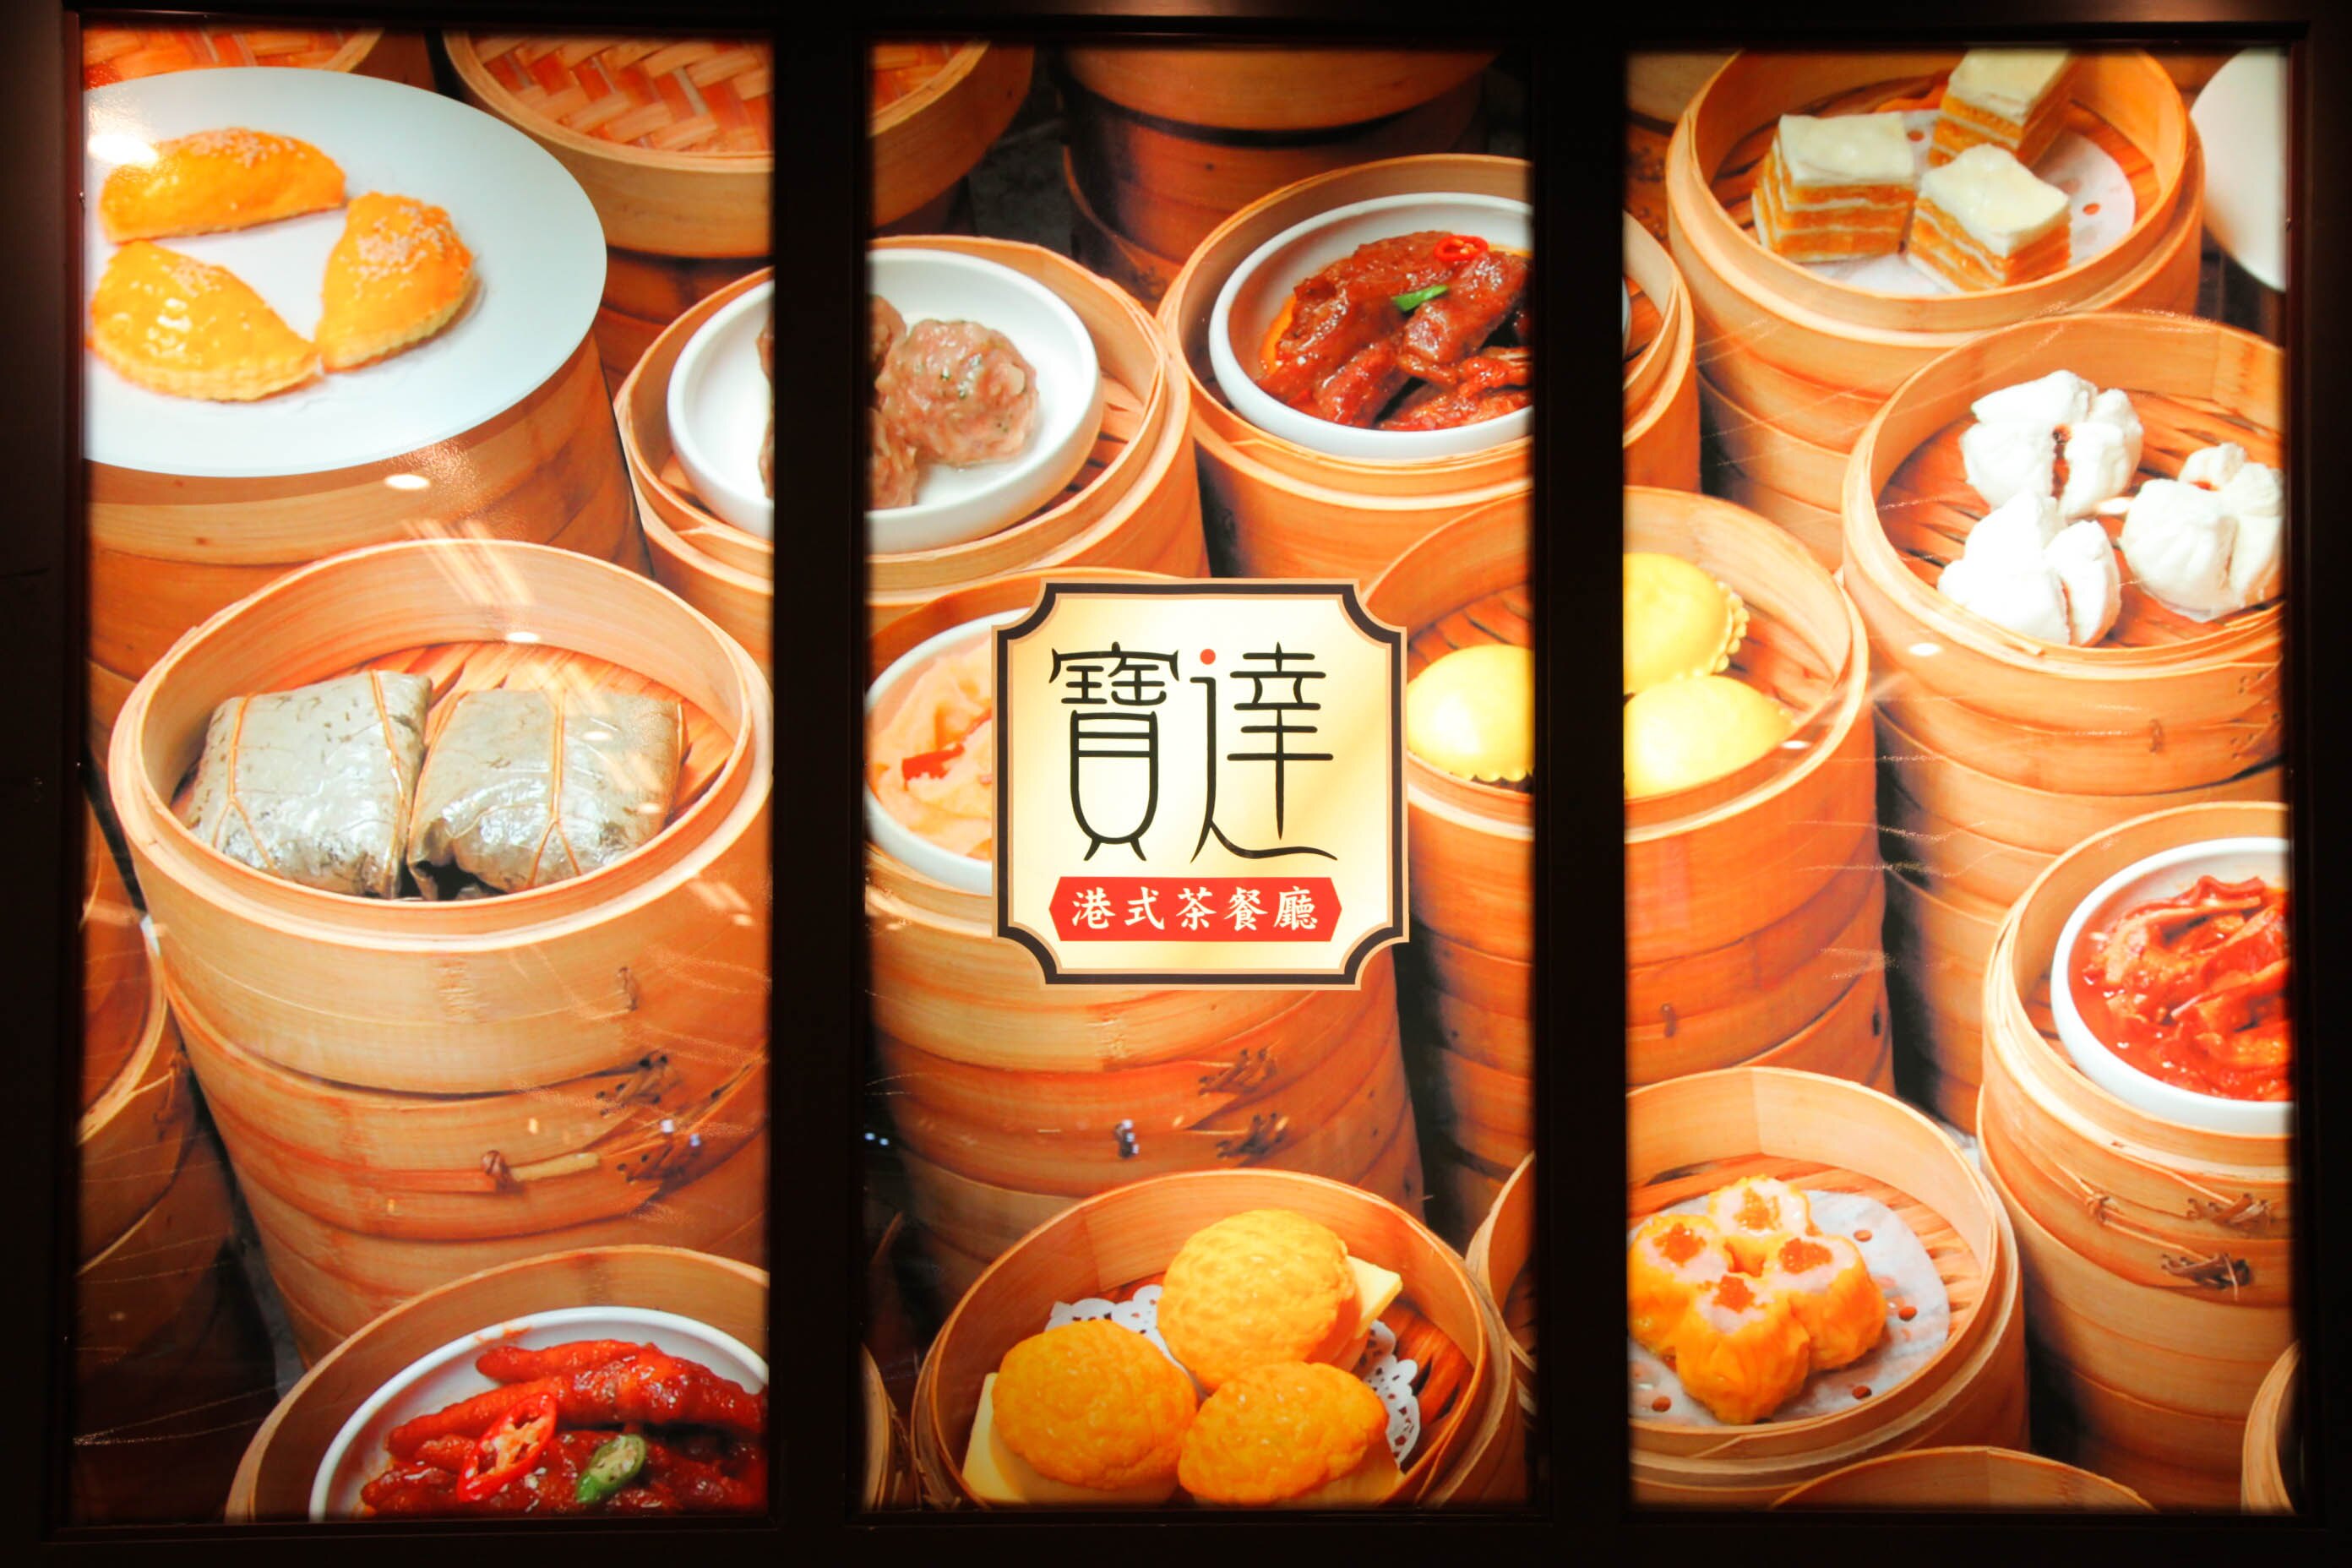 Nếu mọi người tìm kiếm ẩm thực kiểu Hong Kong trên Internet, sẽ dễ dàng bắt gặp rất nhiều giới thiệu về Nhà hàng ẩm thực Hồng Kông Bảo Đạt, bởi vì mỗi món ăn ở nhà hàng đều rất chuẩn vị của Hồng Kông. (Nguồn ảnh: nhân vật cung cấp)